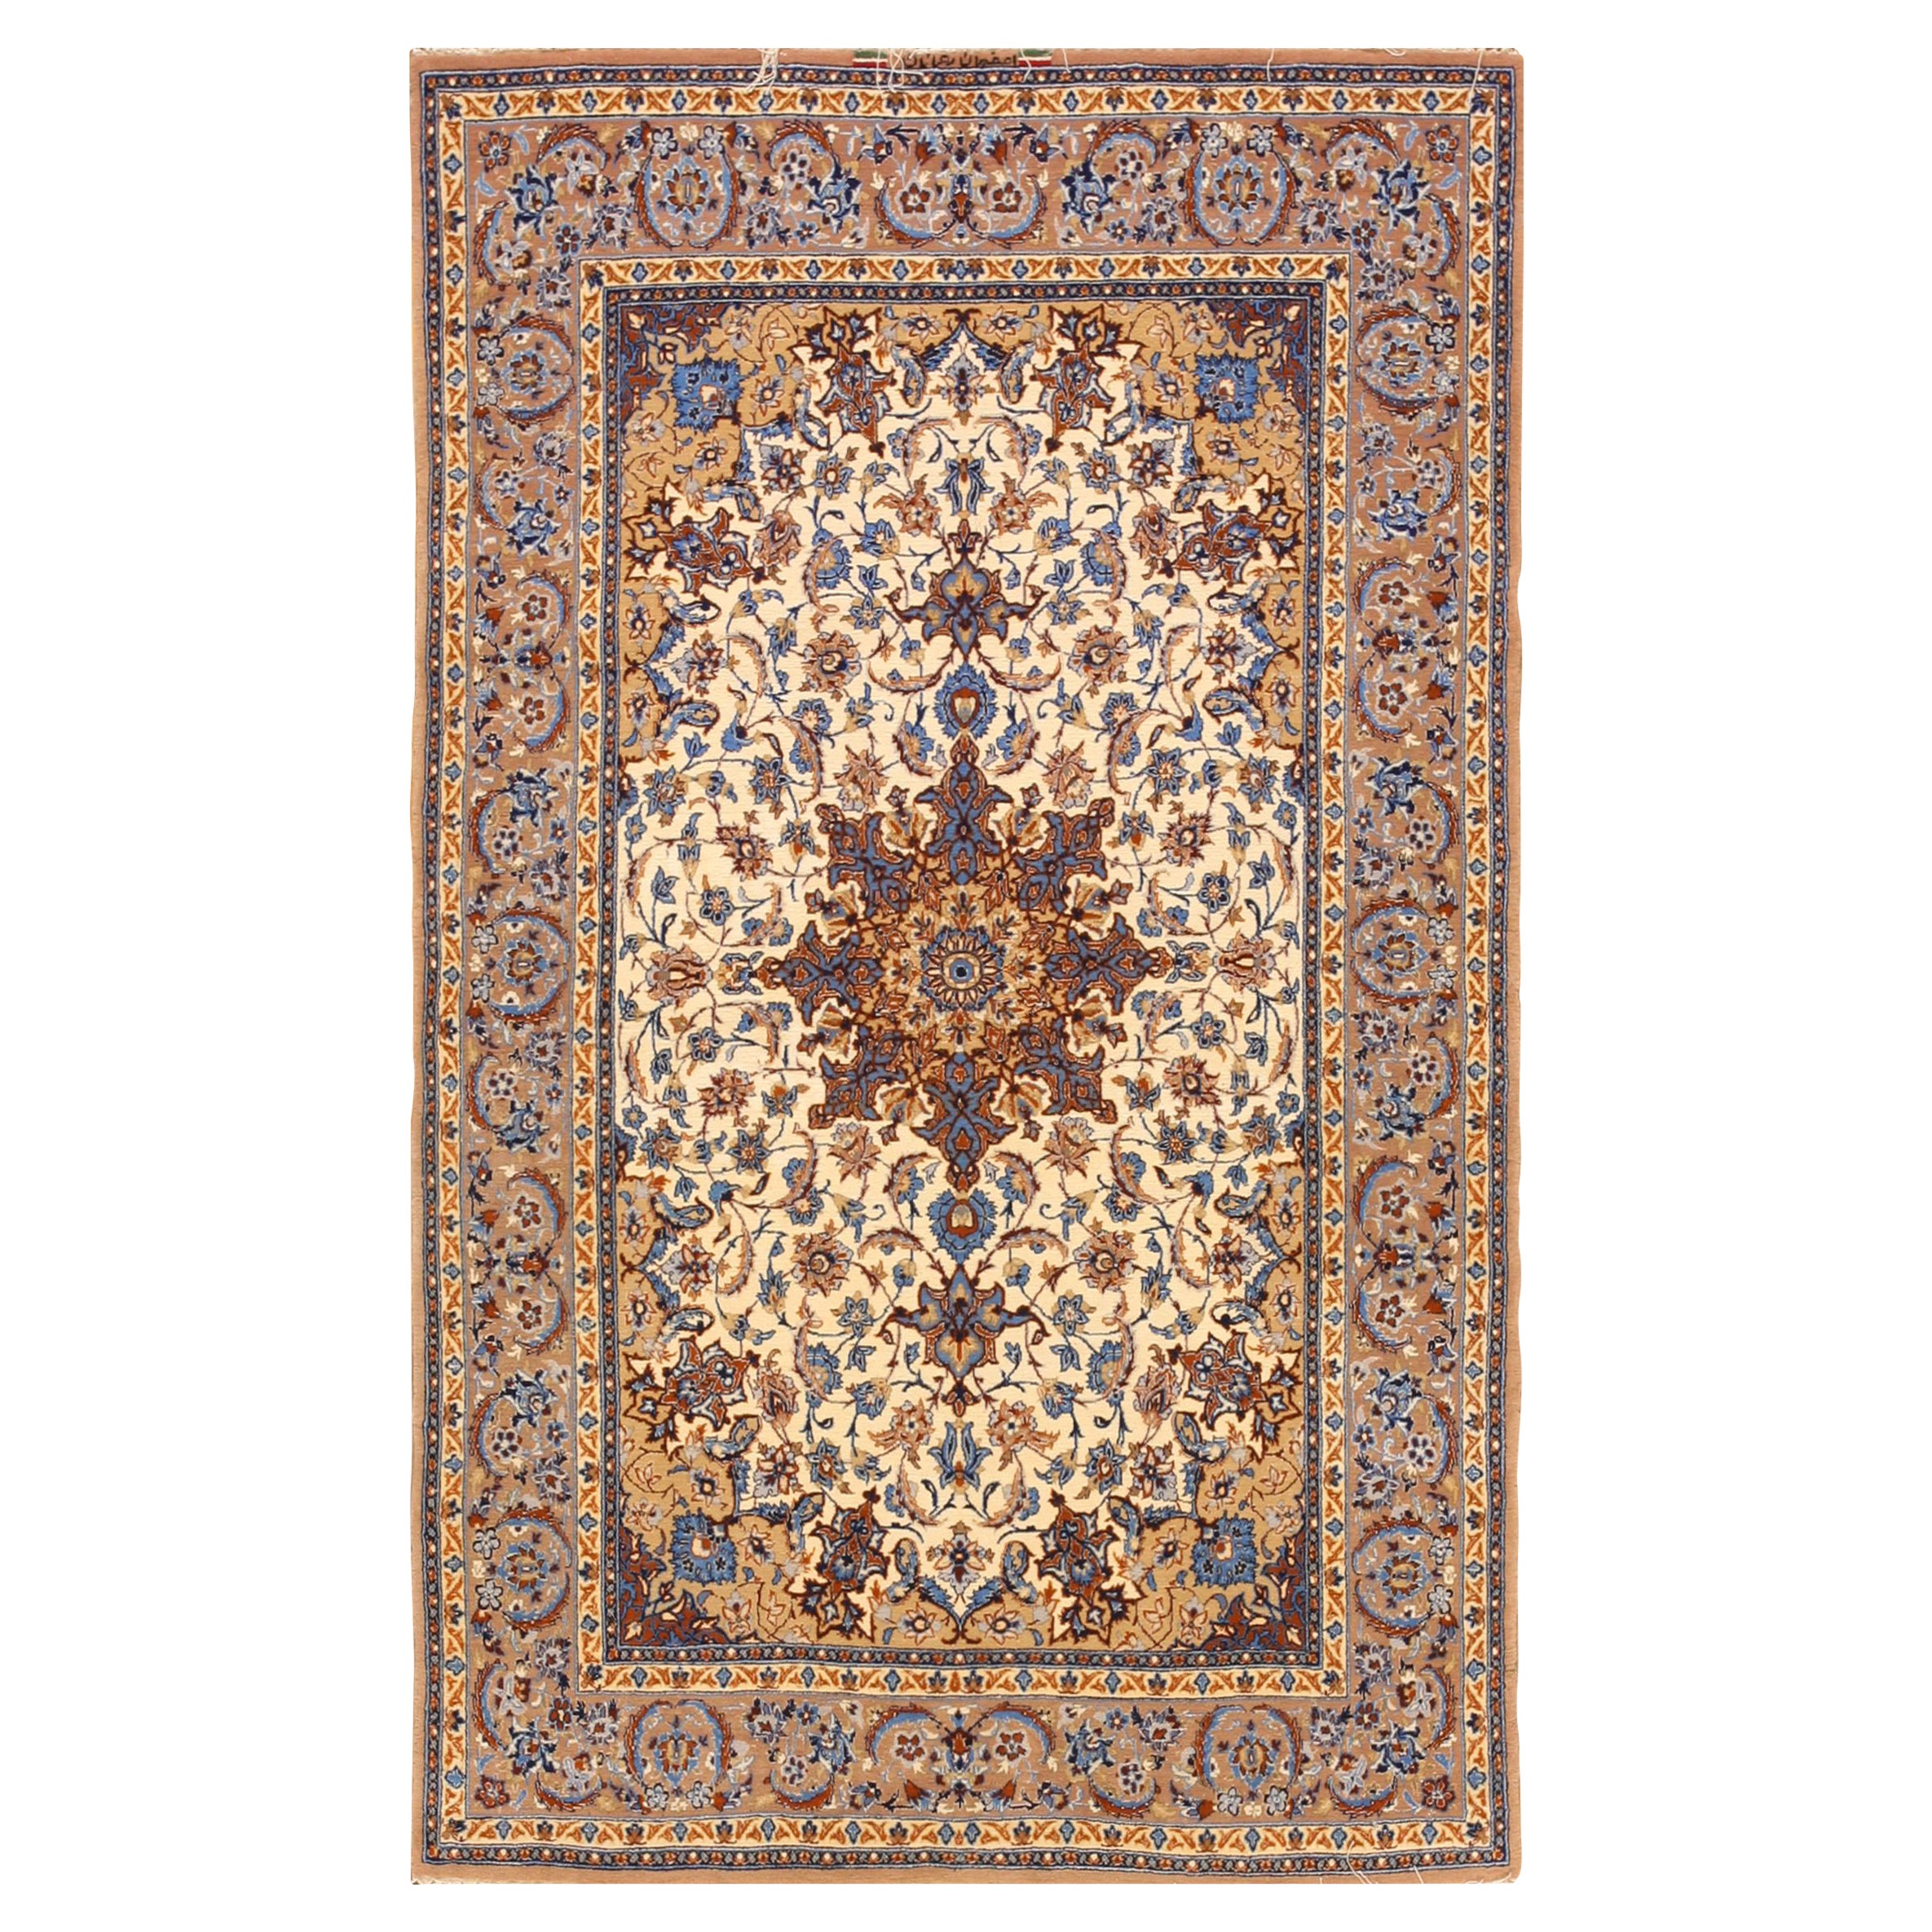 Mid 20th Century Persian Isfahan Carpet ( 5'1" x 8' - 155 x 245 ) 